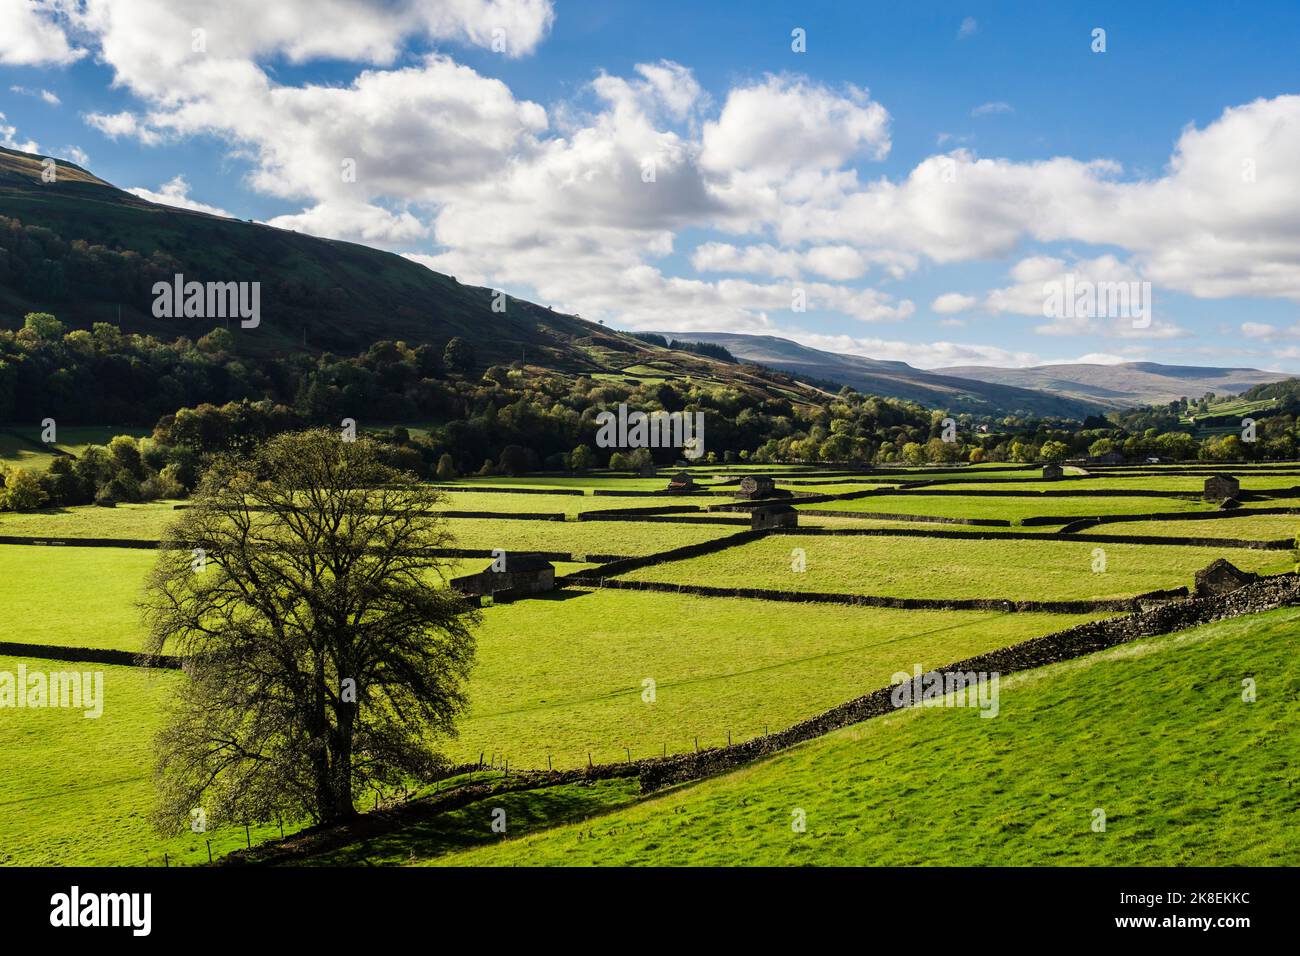 Campagna inglese con campi, fienili e pareti in pietra nel Parco Nazionale Yorkshire Dales. Gunnerside, Swaledale, North Yorkshire, Inghilterra, Regno Unito, Regno Unito Foto Stock